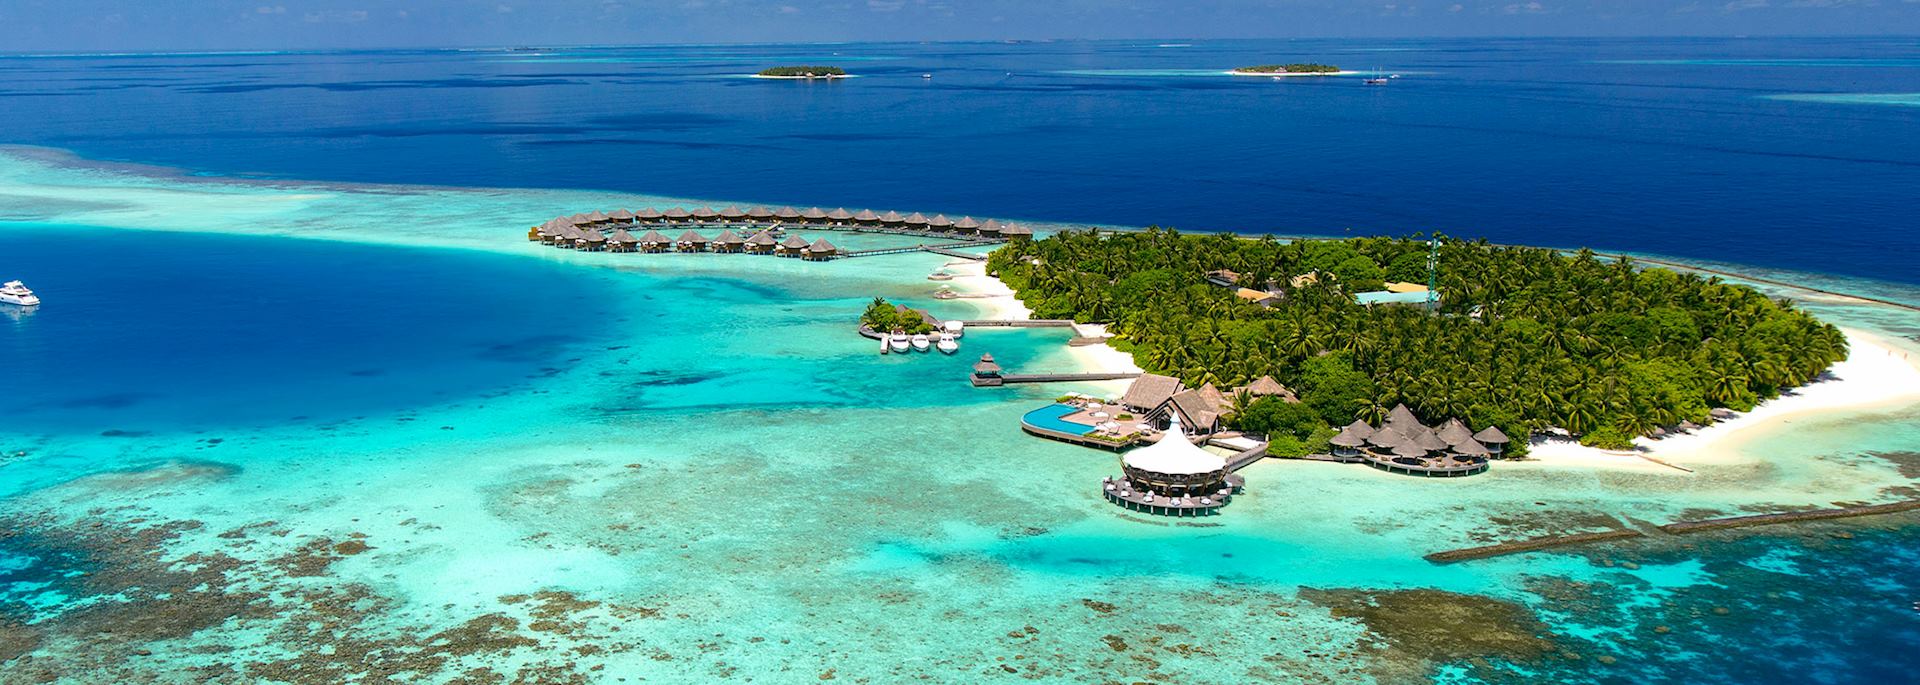 Aerial view, Baros, Maldives